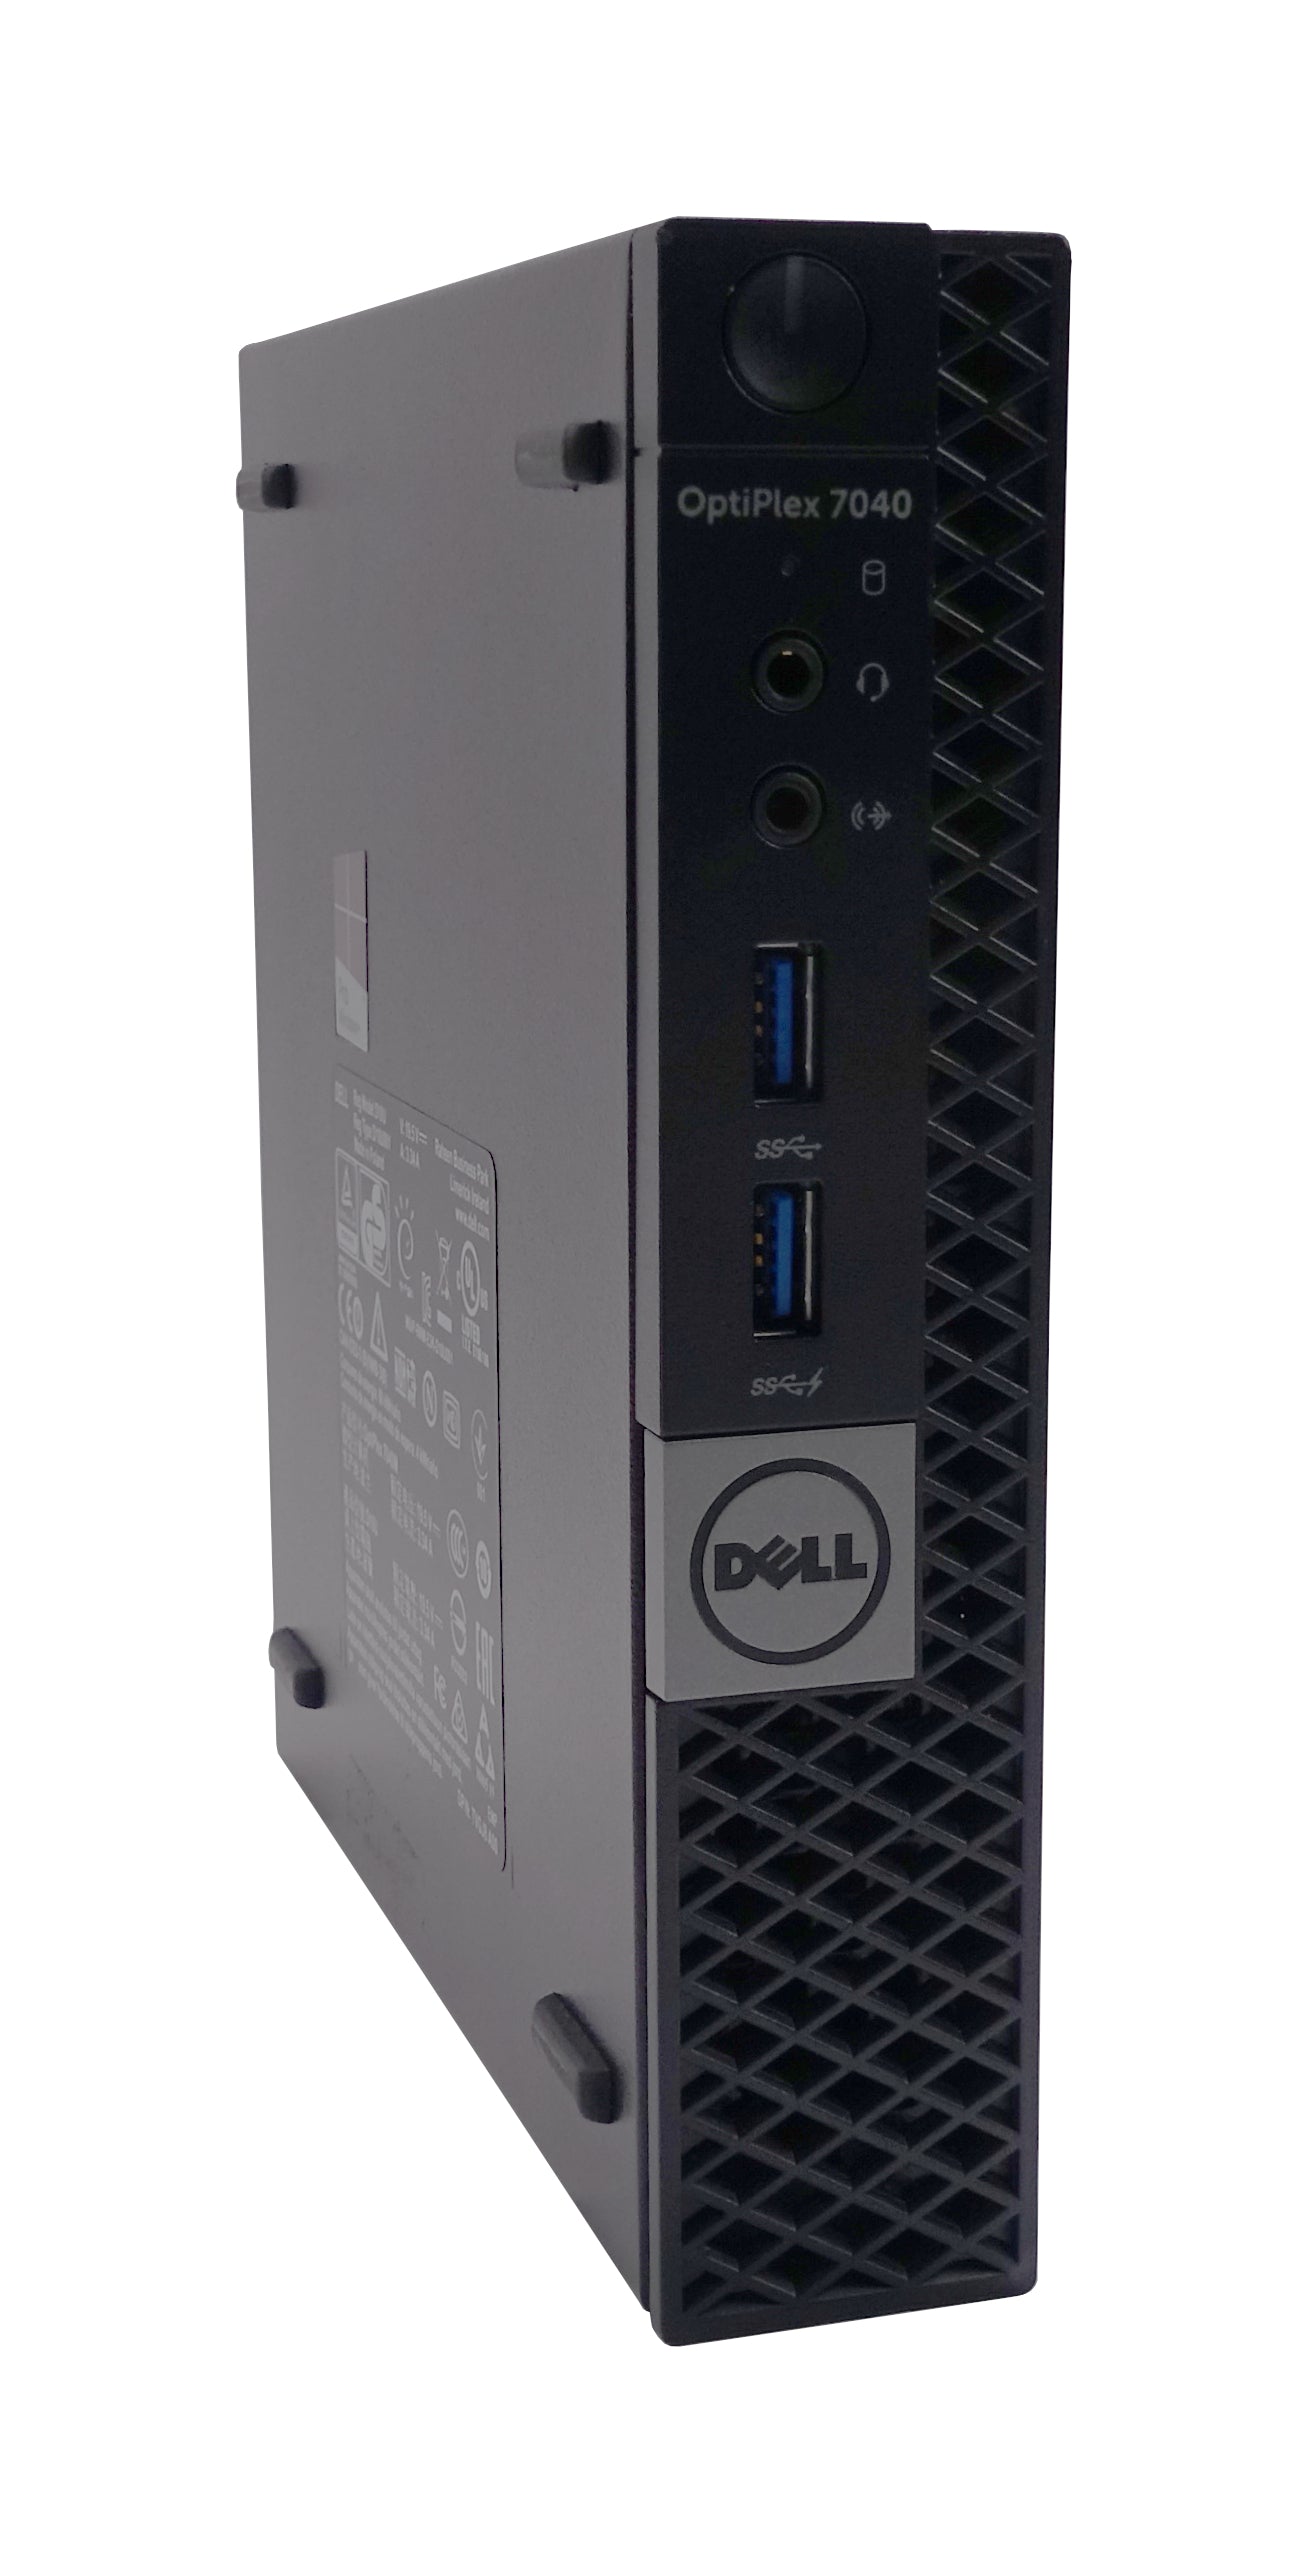 Dell Optiplex 7040 Micro PC, Core i7 6th Gen, 8GB RAM, 128GB SSD